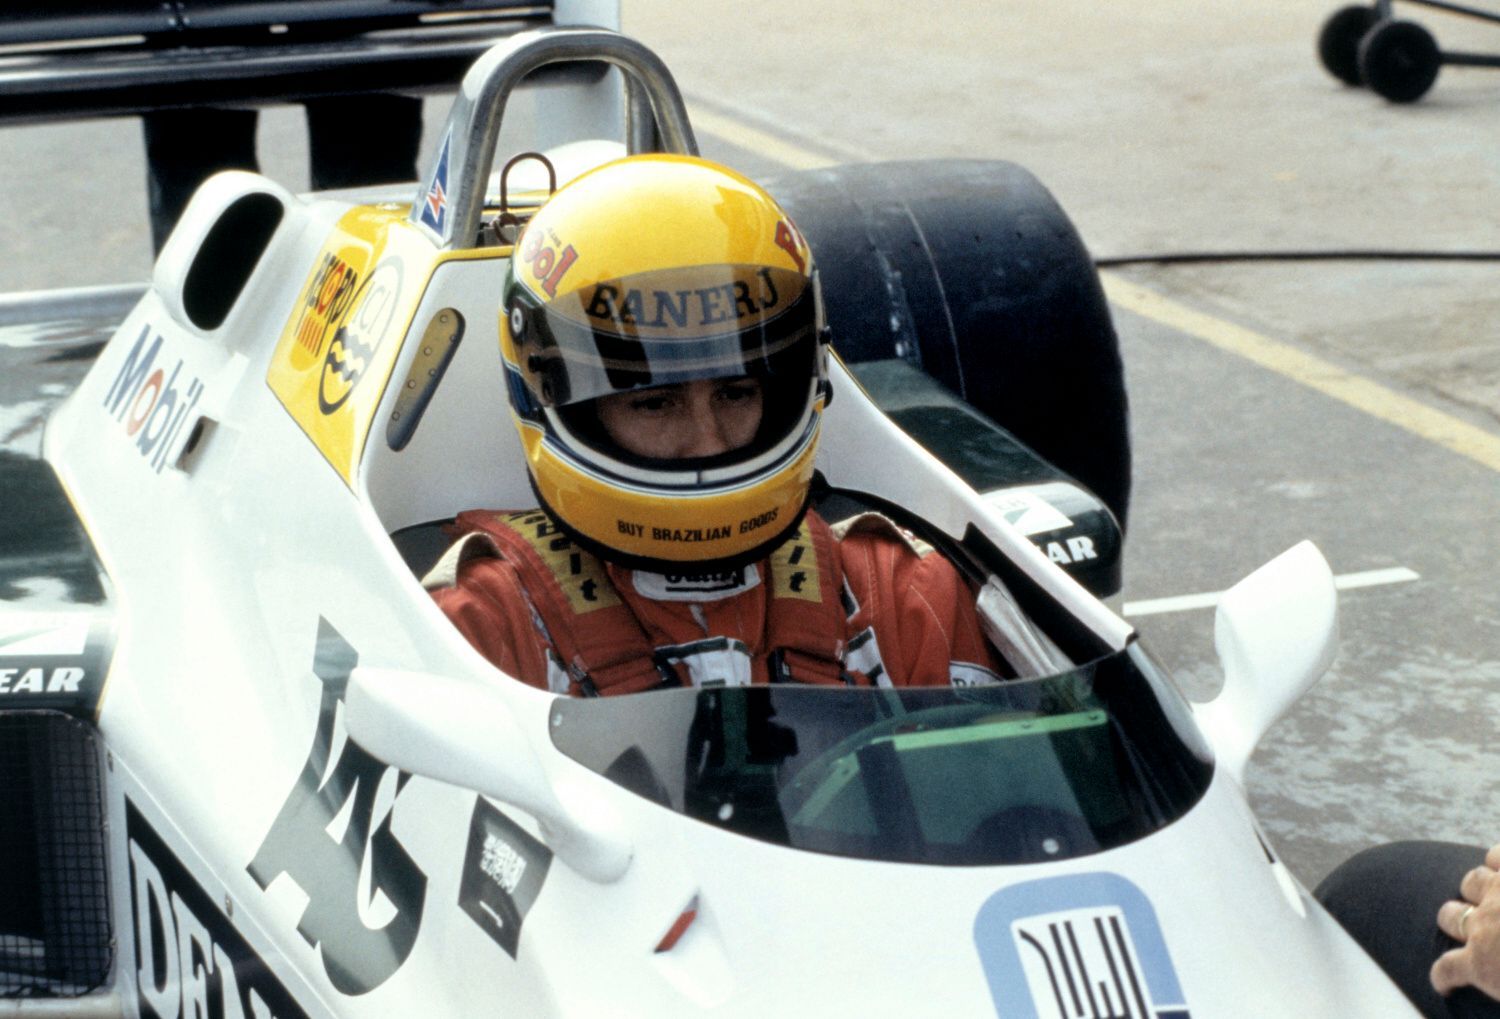 F1 1983: Ayrton Senna, Williams